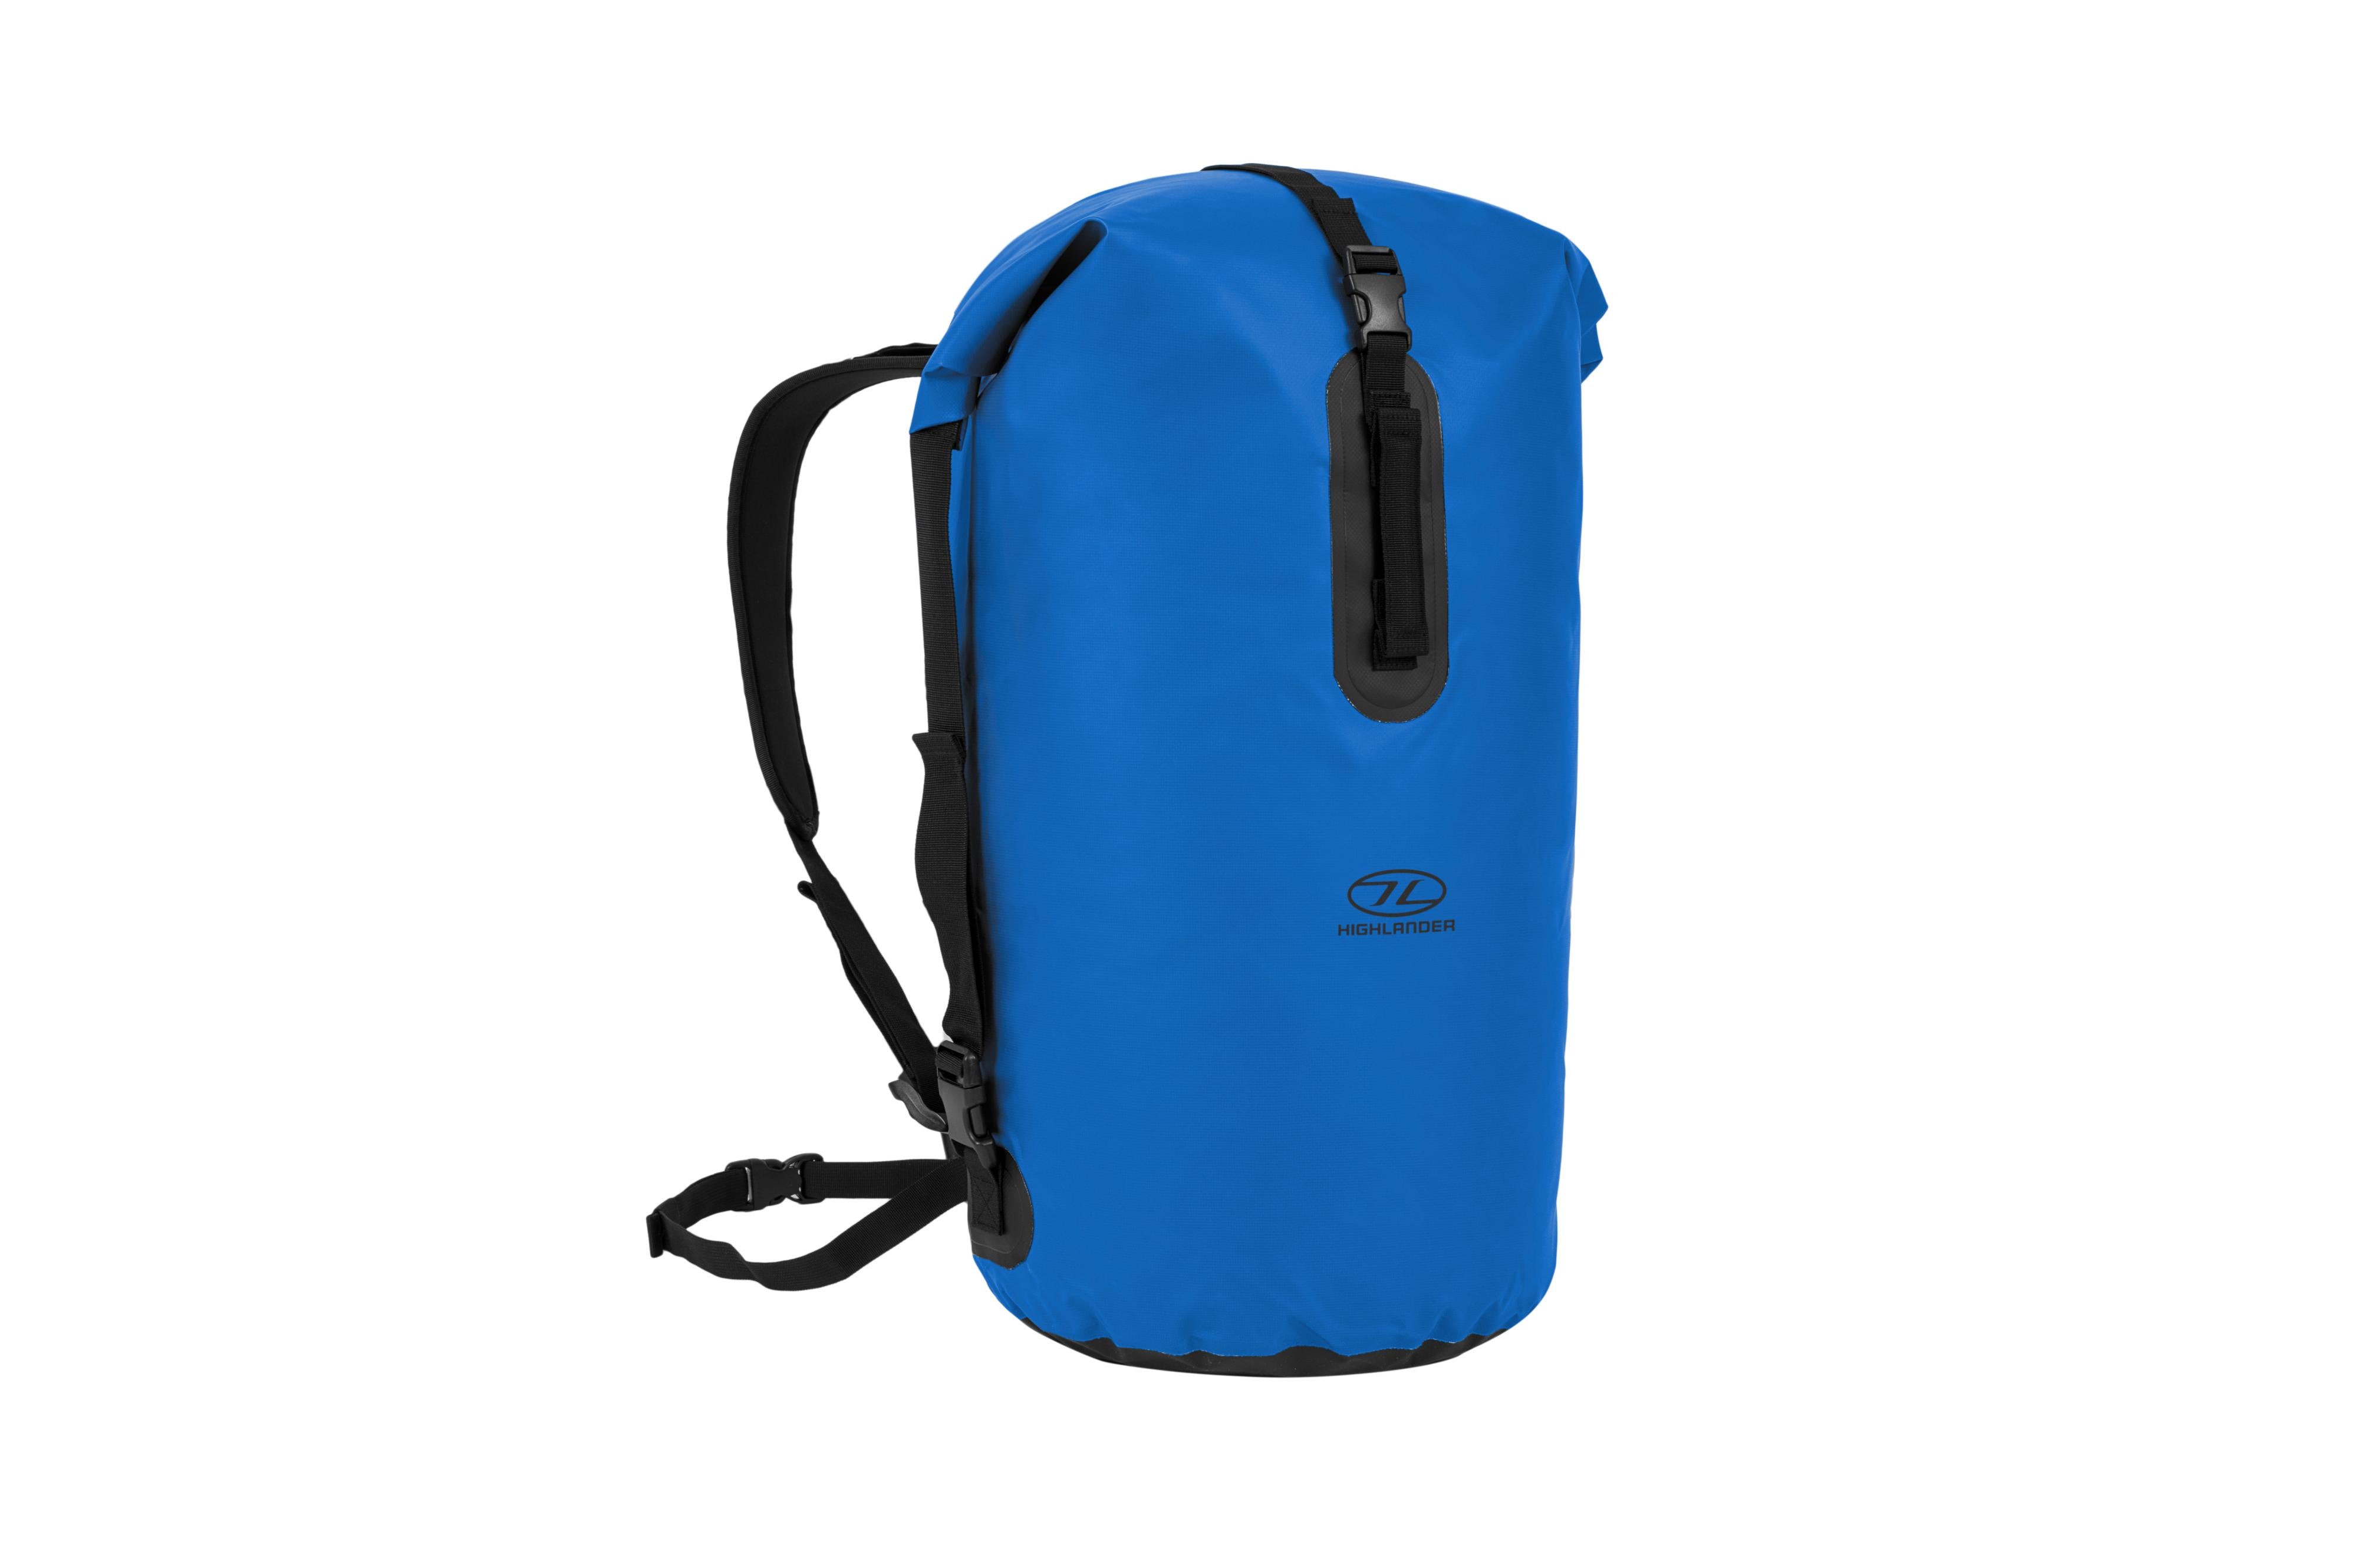 Buy Highlander Waterproof Dry Bag 70L - Duffle Roll Top Backpack